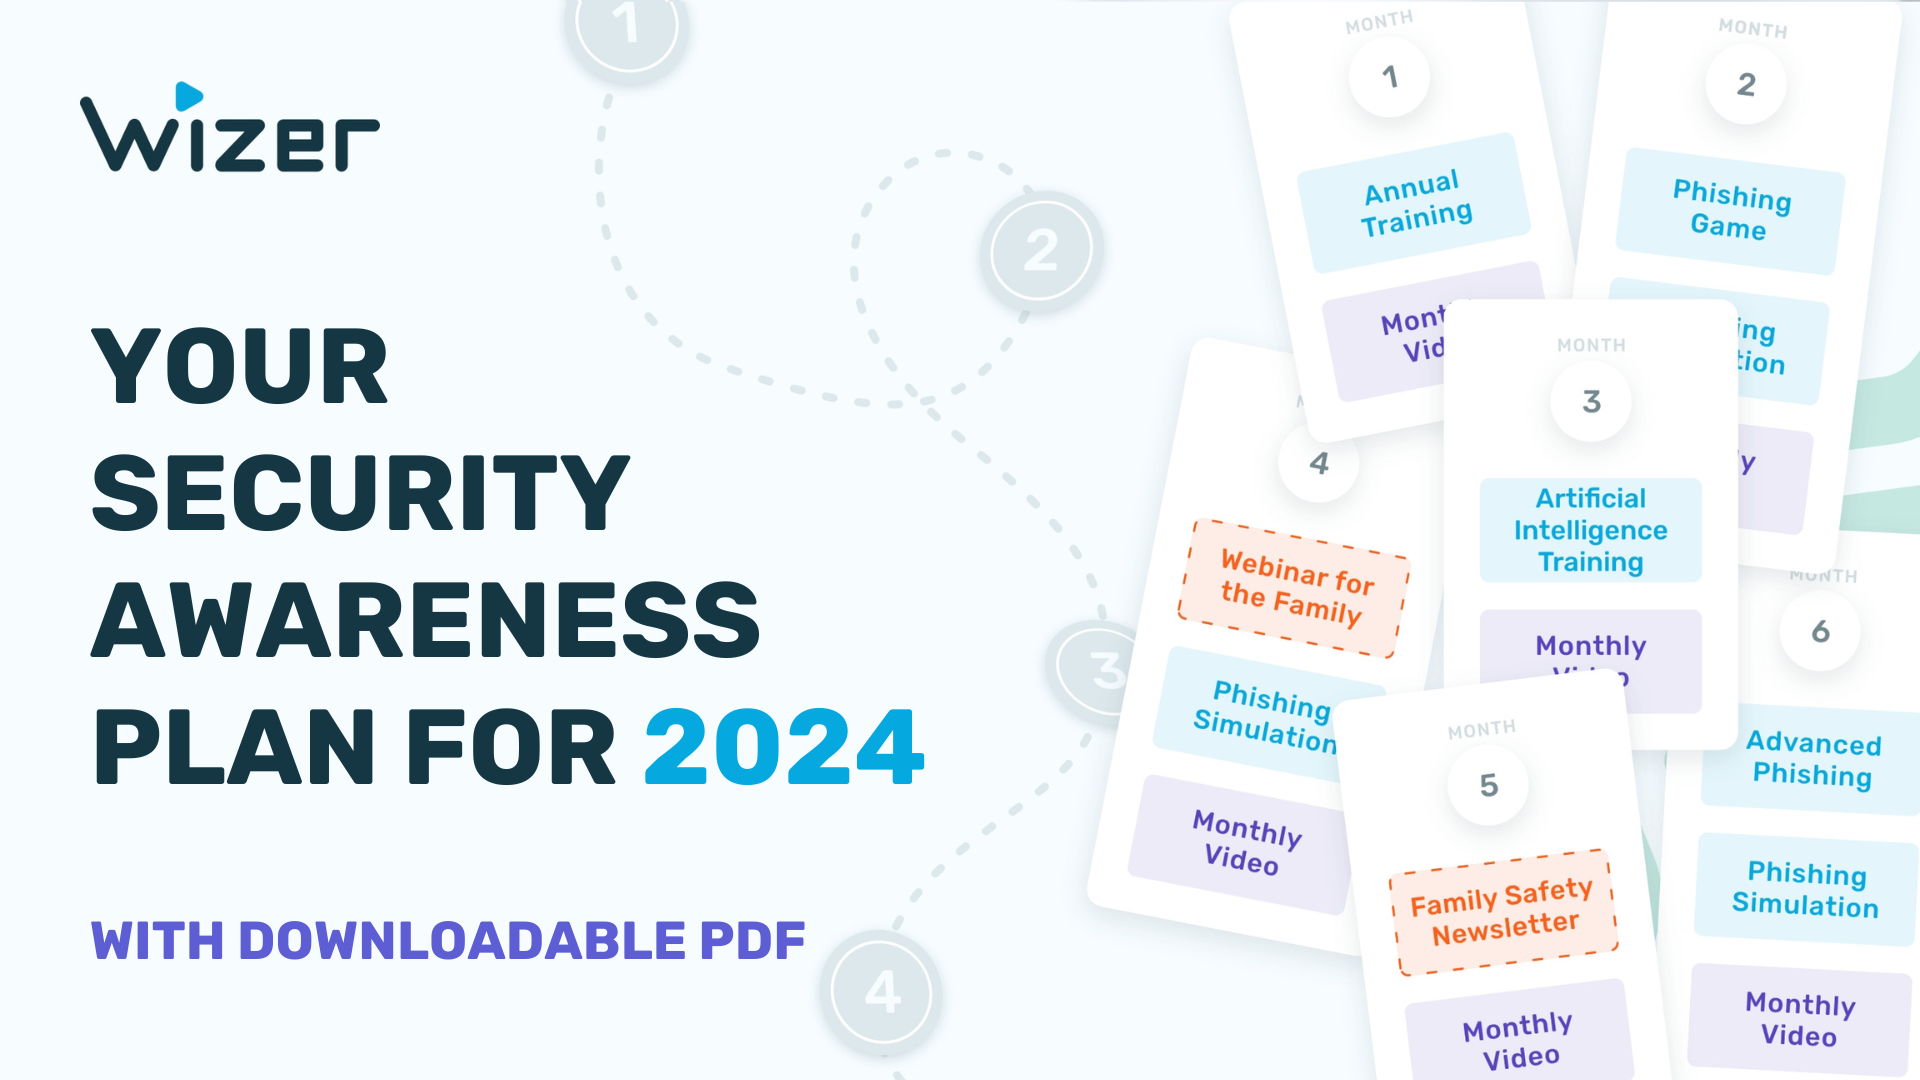 Security Awareness Plan for 2024